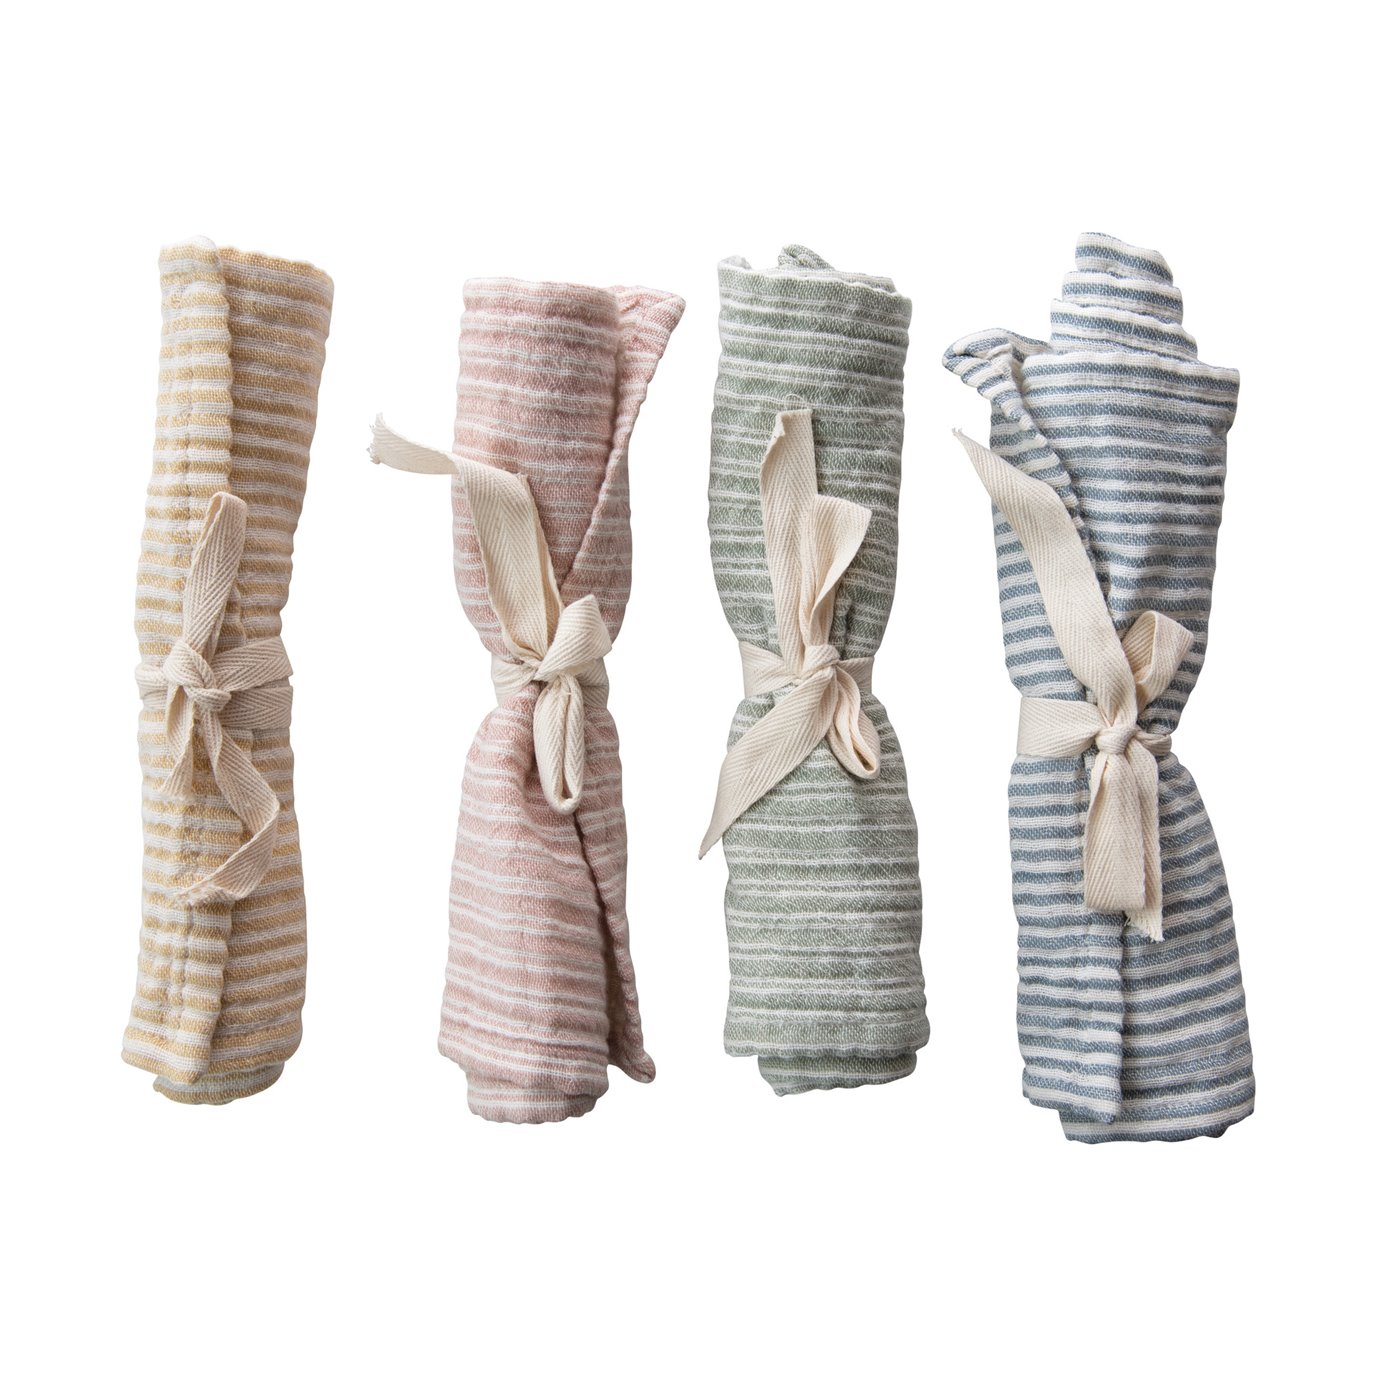 Woven Cotton Burp Cloth w/ Stripes, 4 Colors